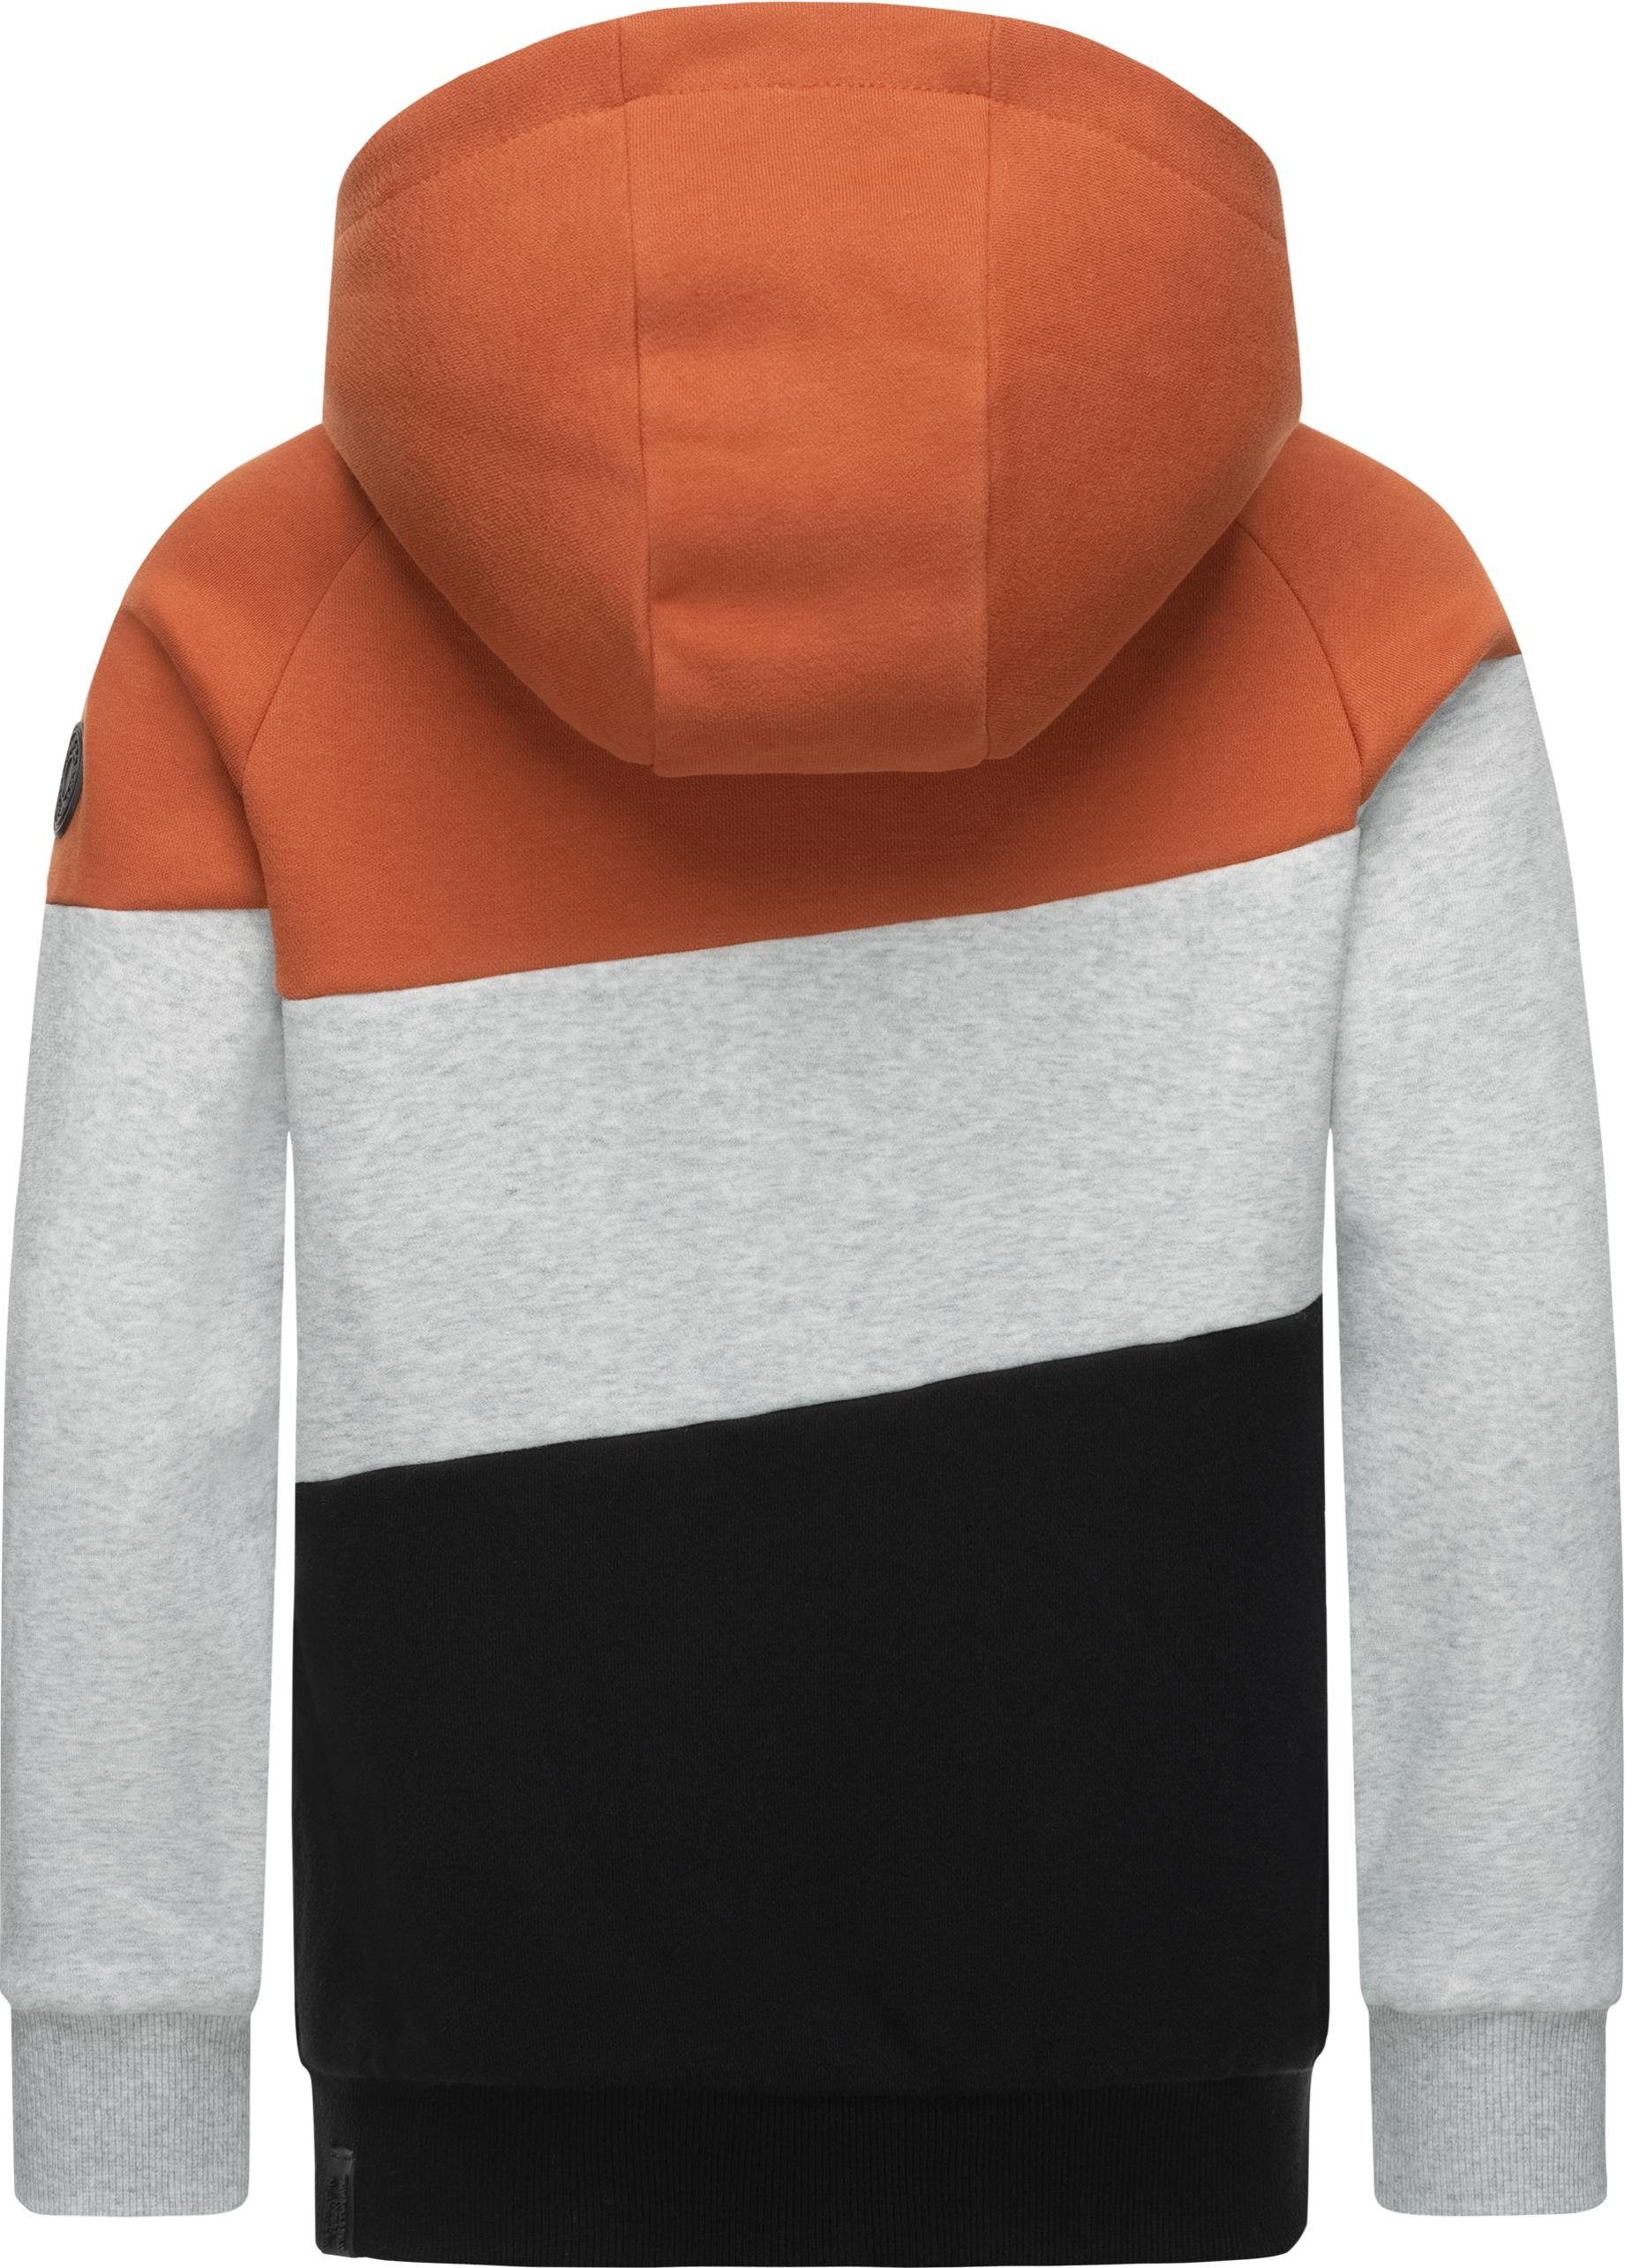 Kapuzenpullover Kapuzensweater orange Kinder großer Jungen Kapuze Vendio Ragwear mit